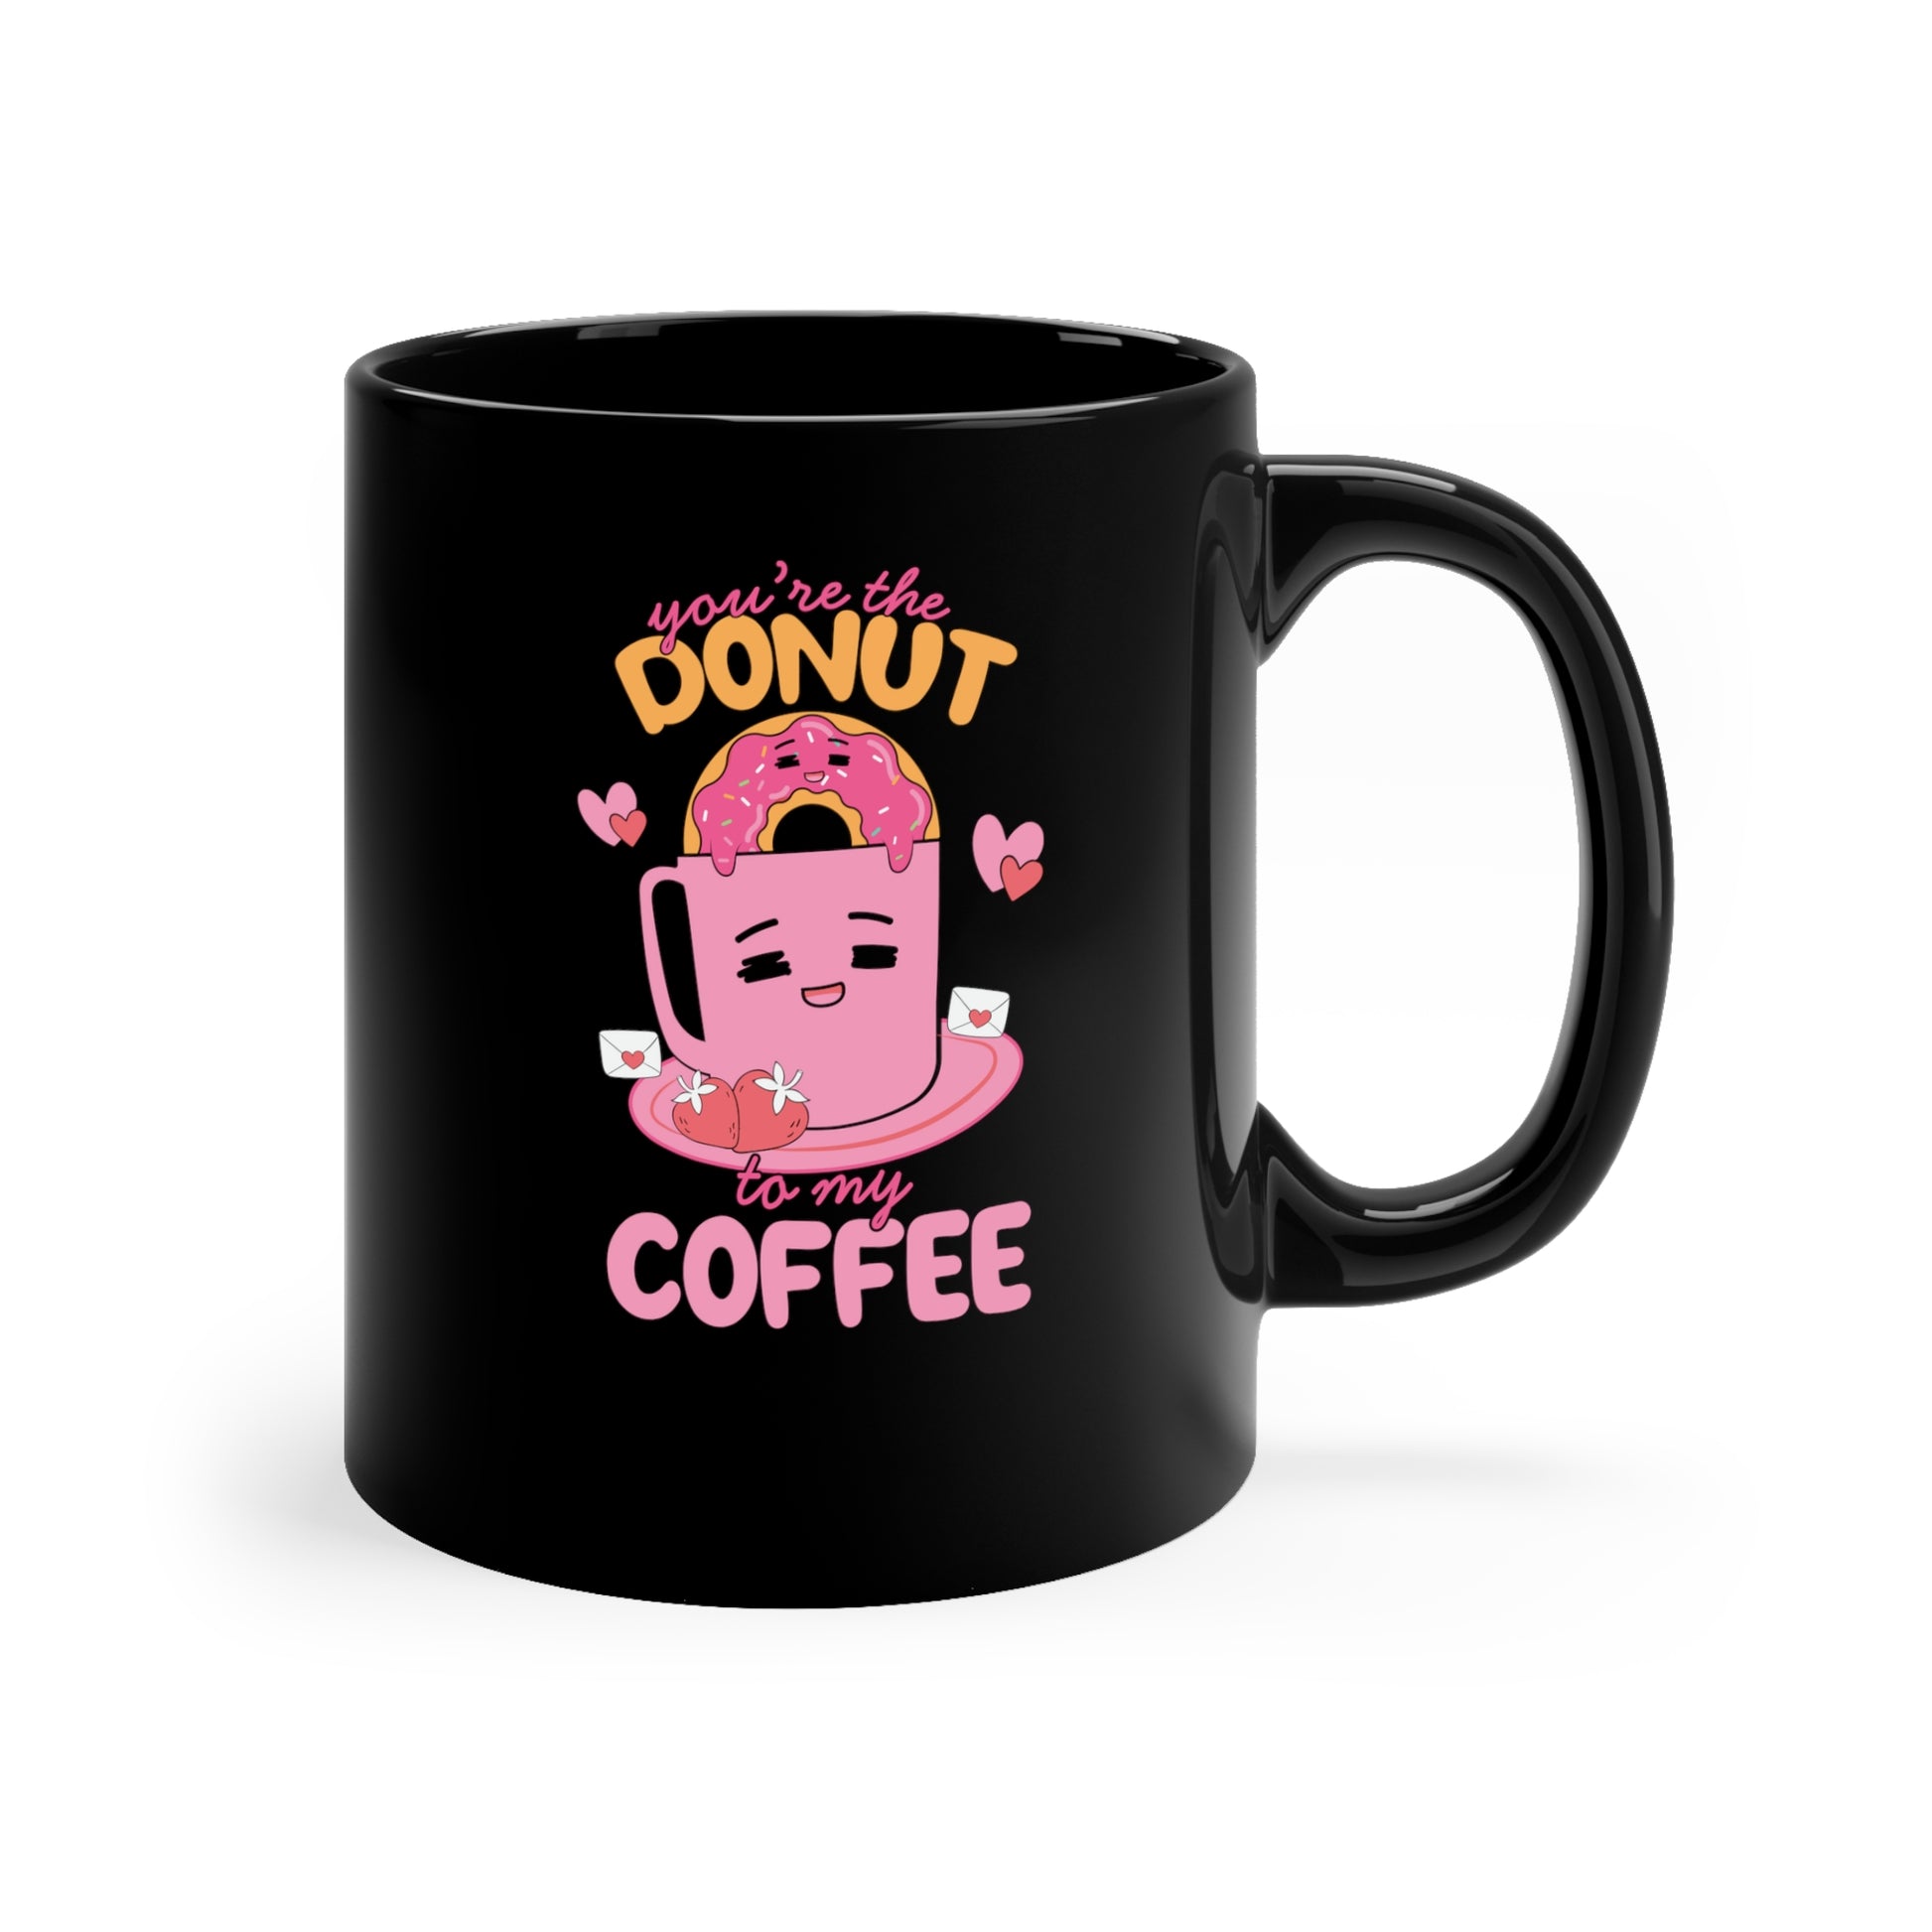 donut and coffee funny coffee mug for coffee lovers